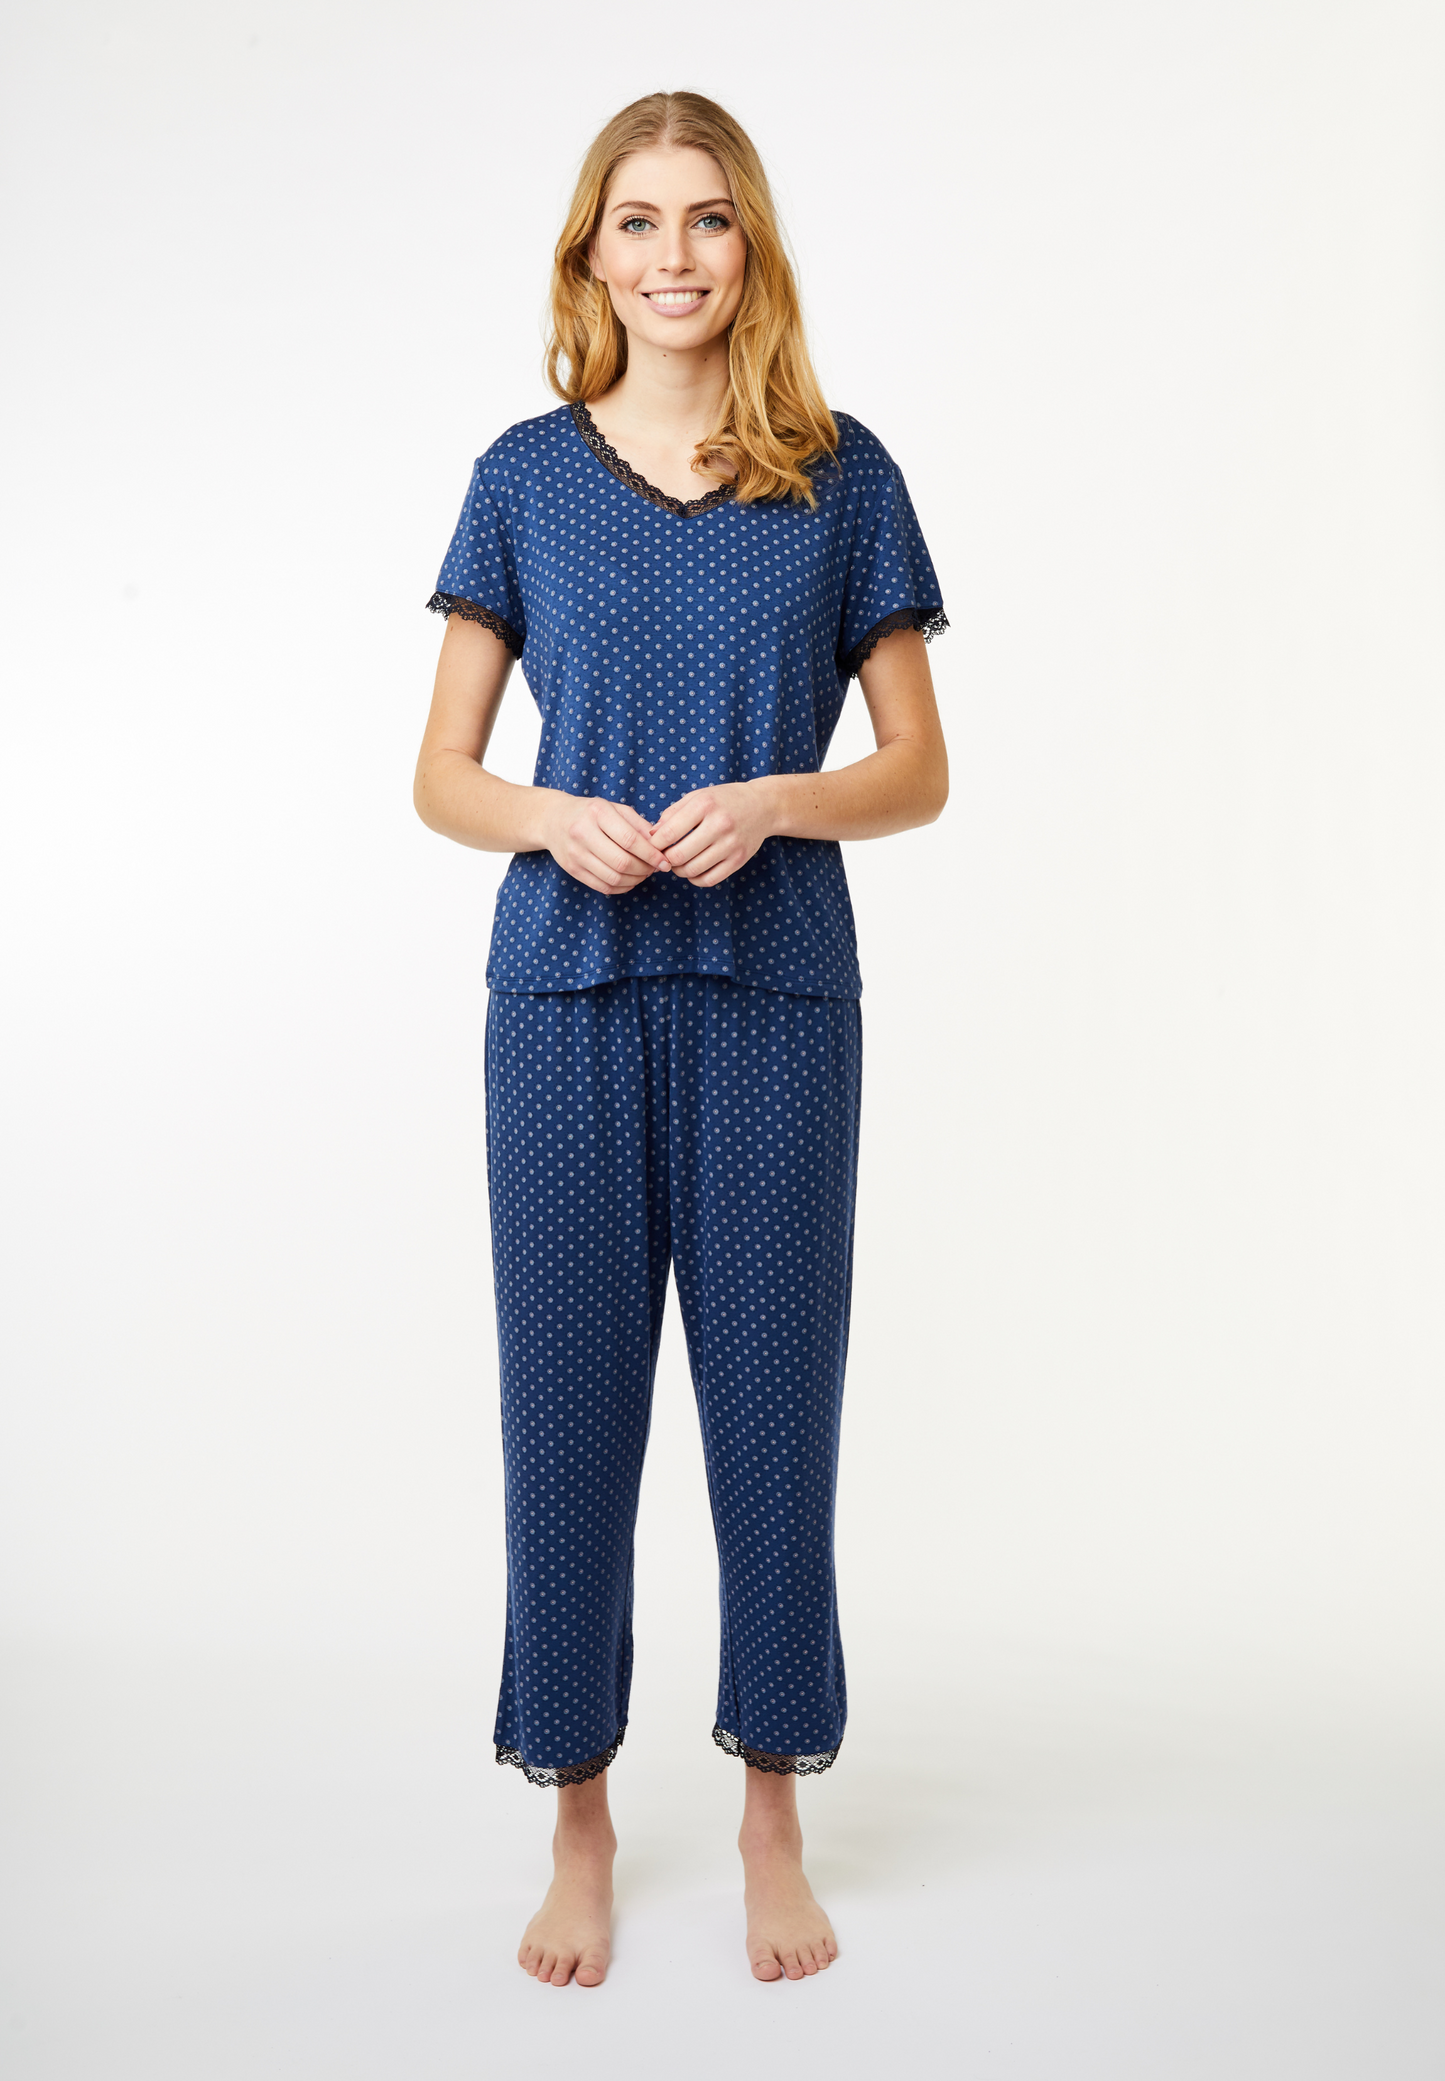 Jasmin Crop Pyjamasbukser med prikker Blå